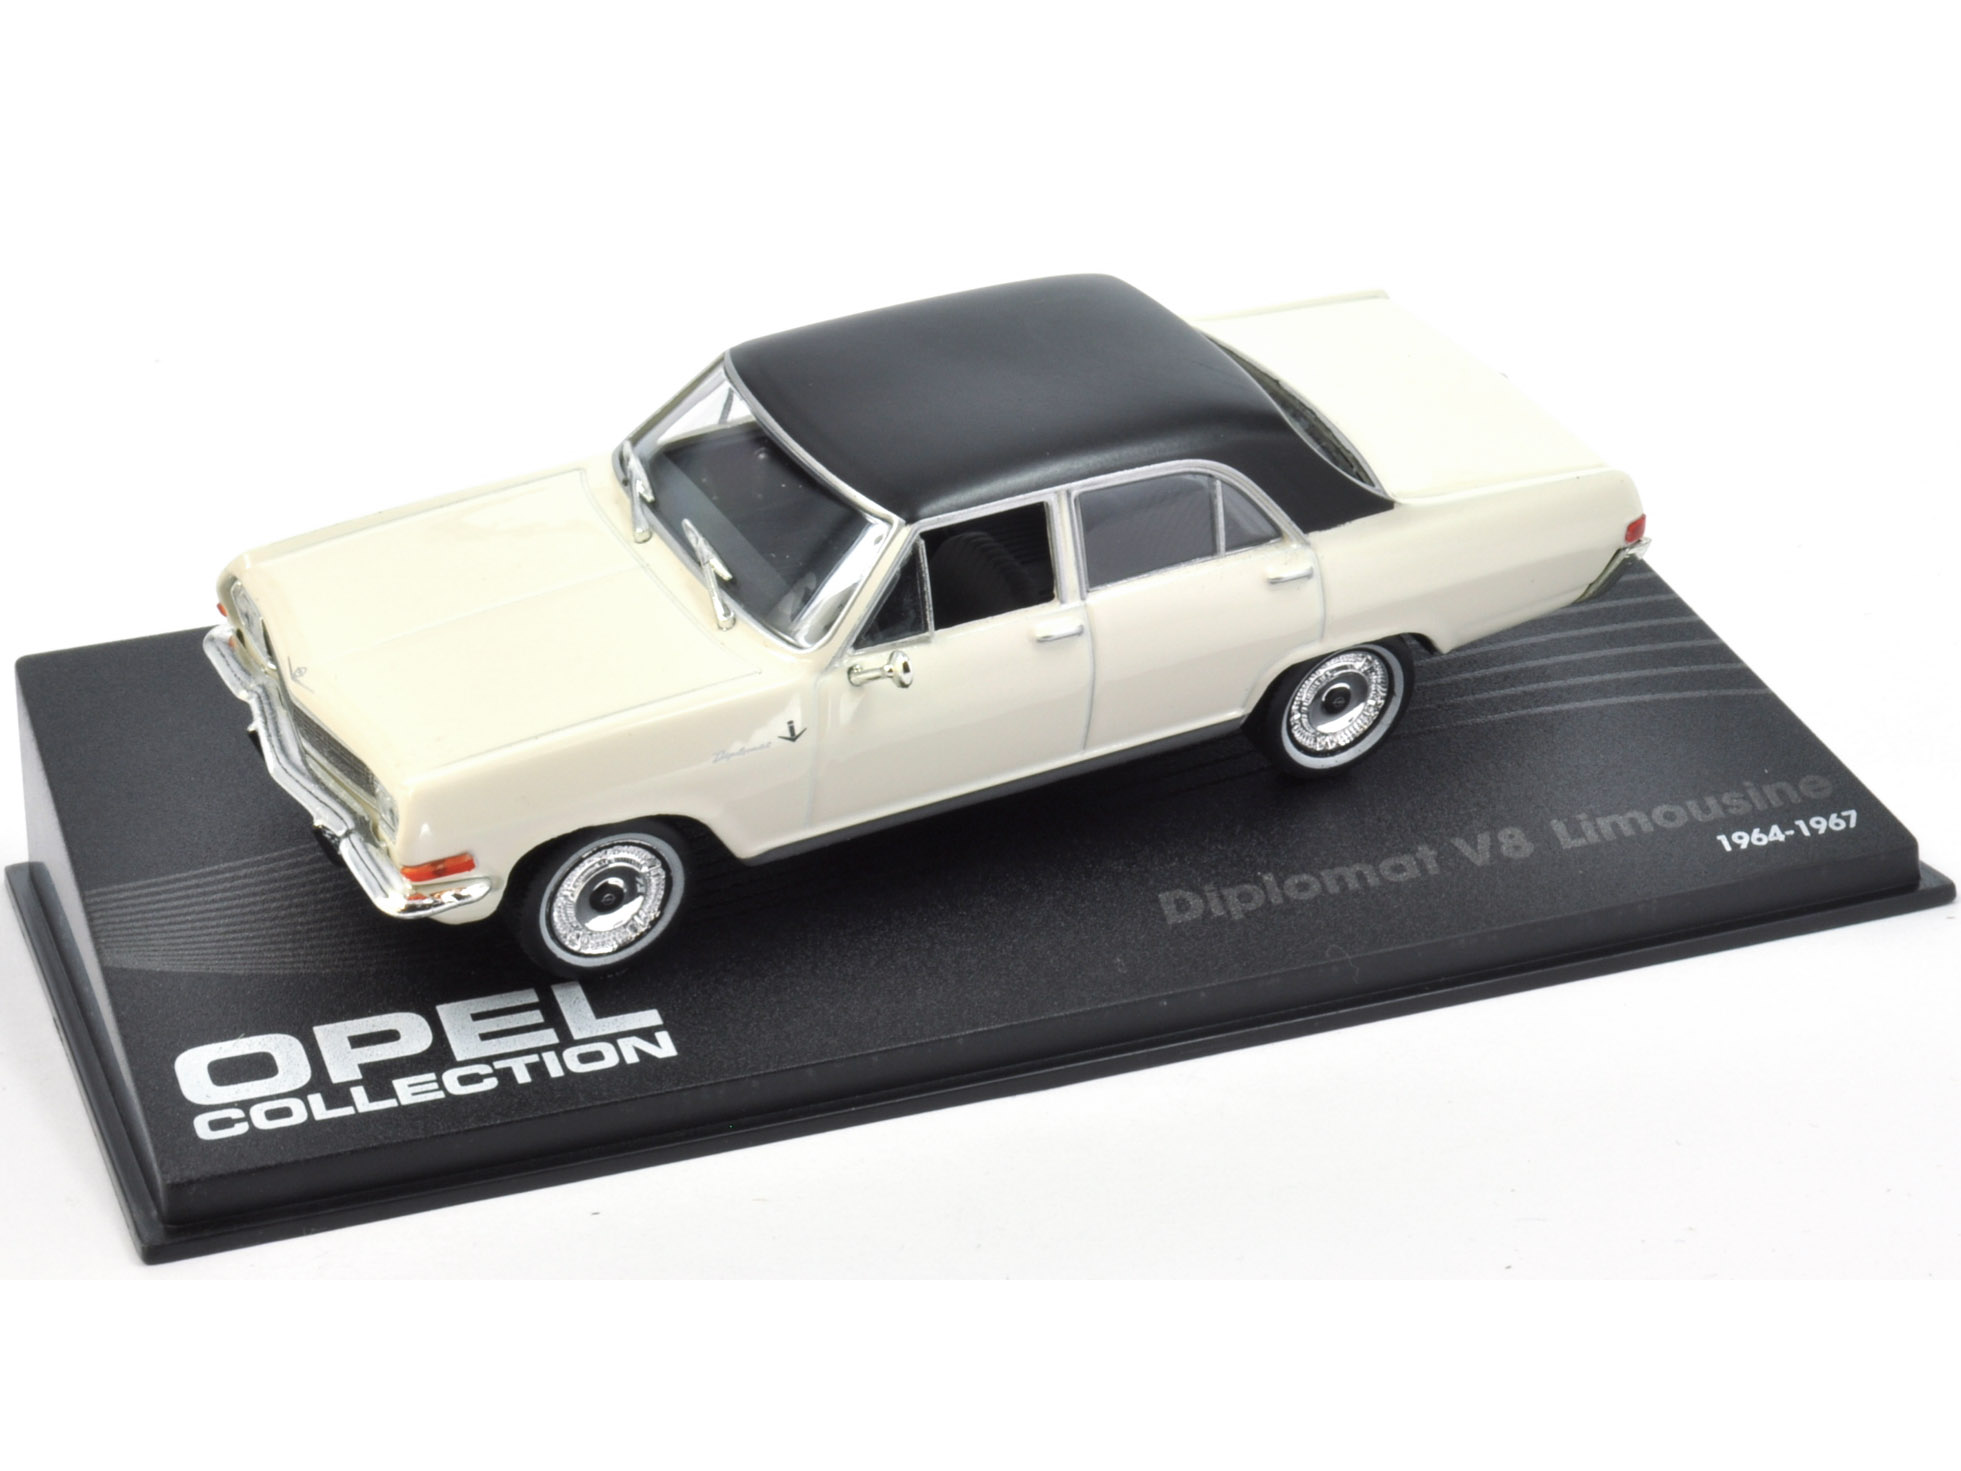 OPEL DIPLOMAT V8 LIMOUSINE - 1964 - 1967